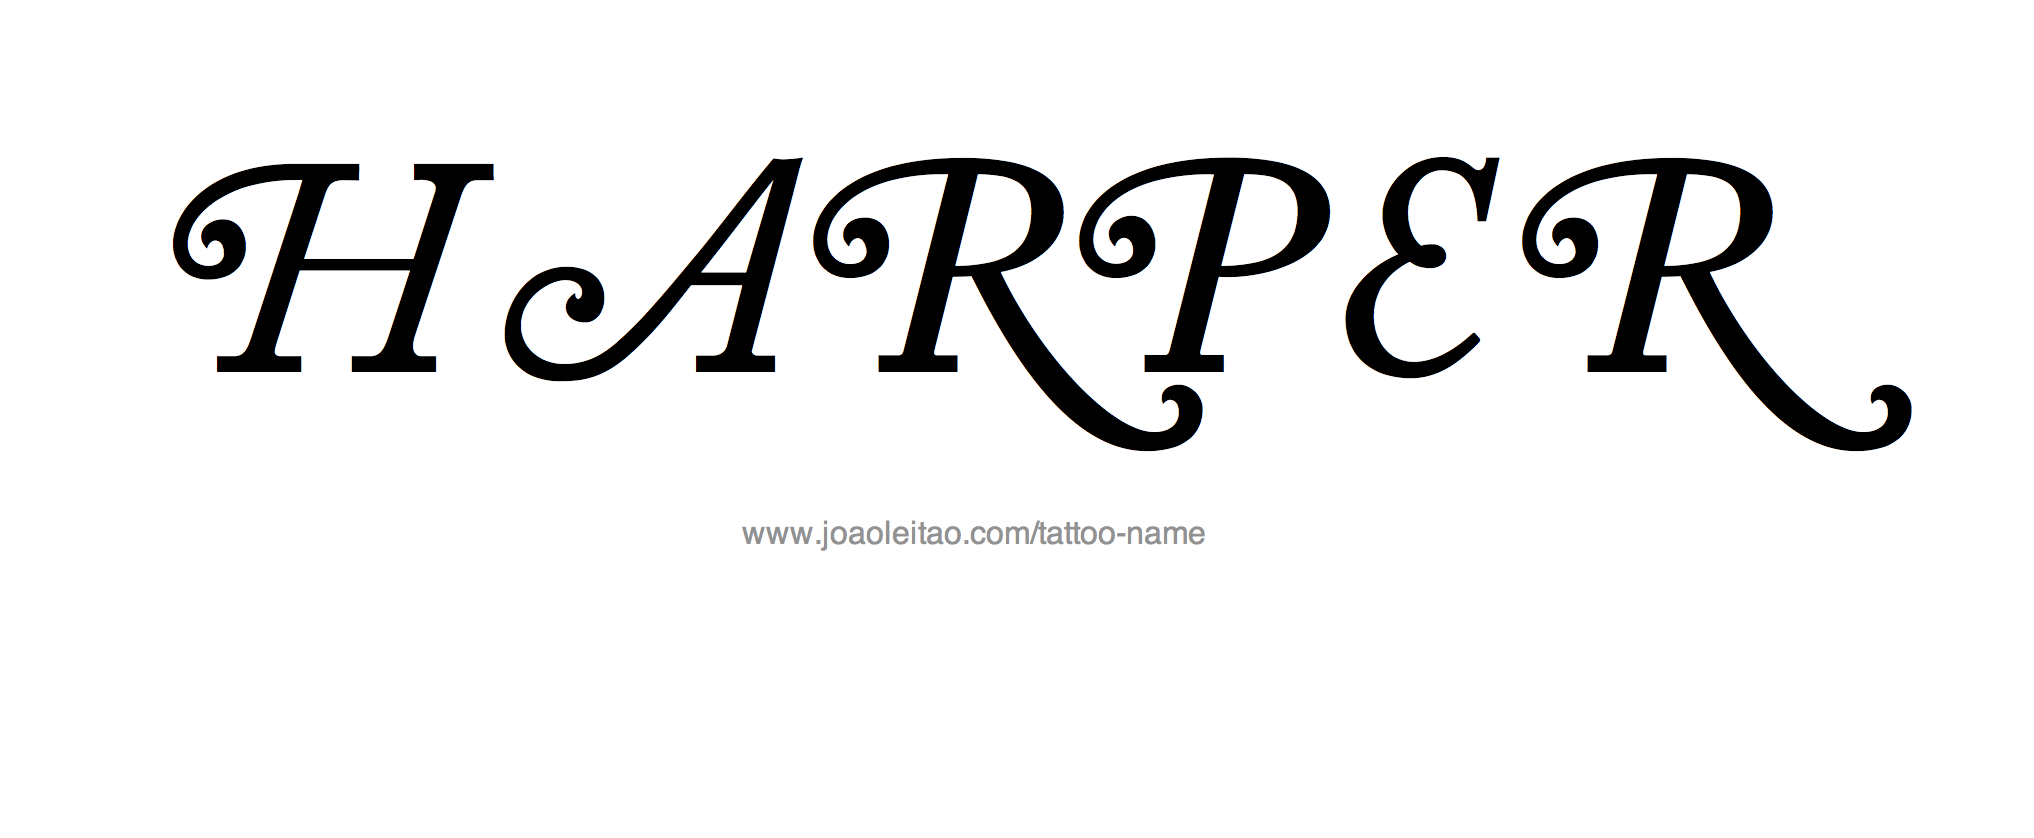 Harper Name Tattoo Designs